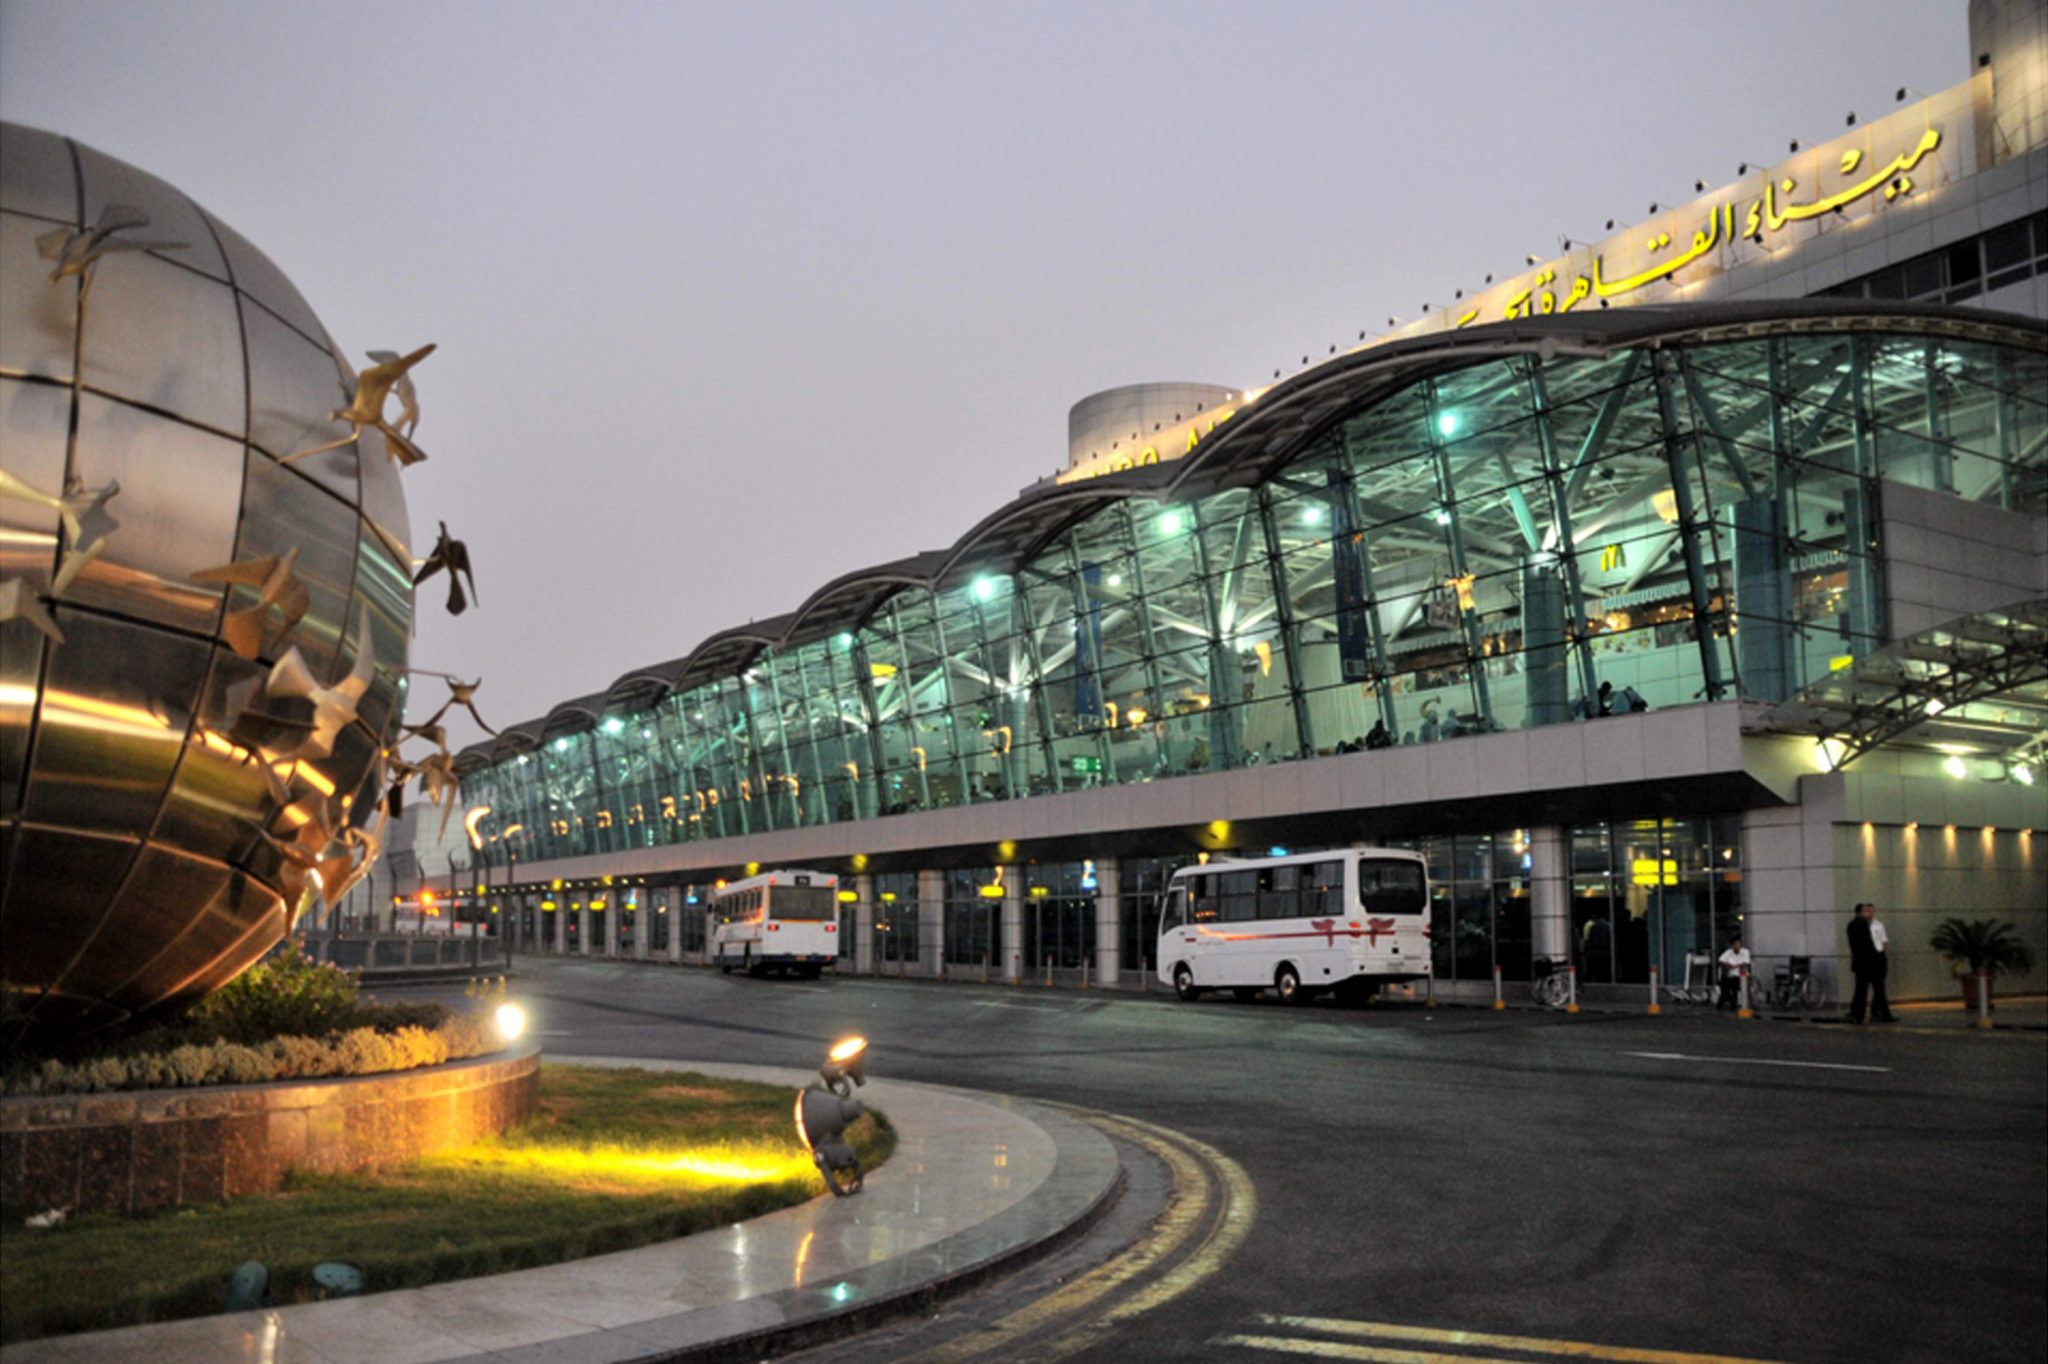   الكوليرا تعلن الطوارئ فى مطار القاهرة